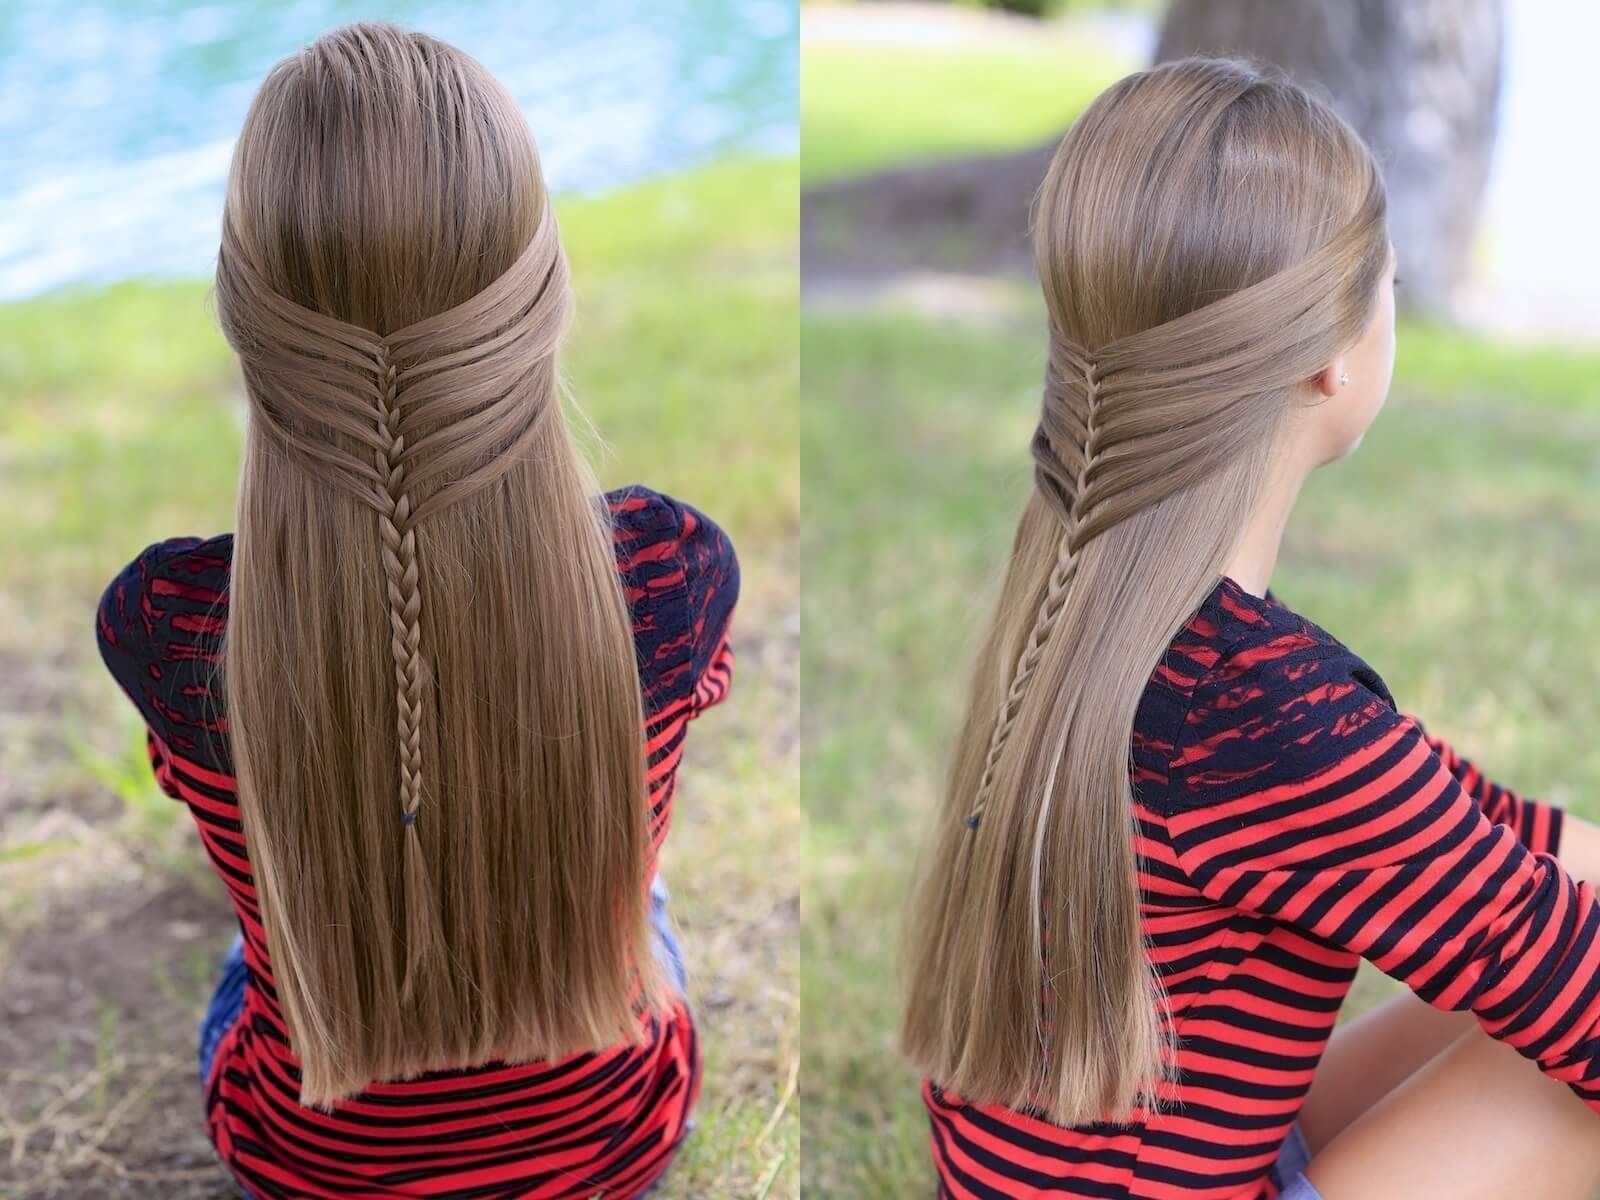 Прическа в школу на длинные быстро. Причёски для девочек на длинные волосы. Красивые причёски для девочек на длинные волосы. Причёски для девочек на длинные волосы в школу. Несложные прически на длинные волосы для девочек.